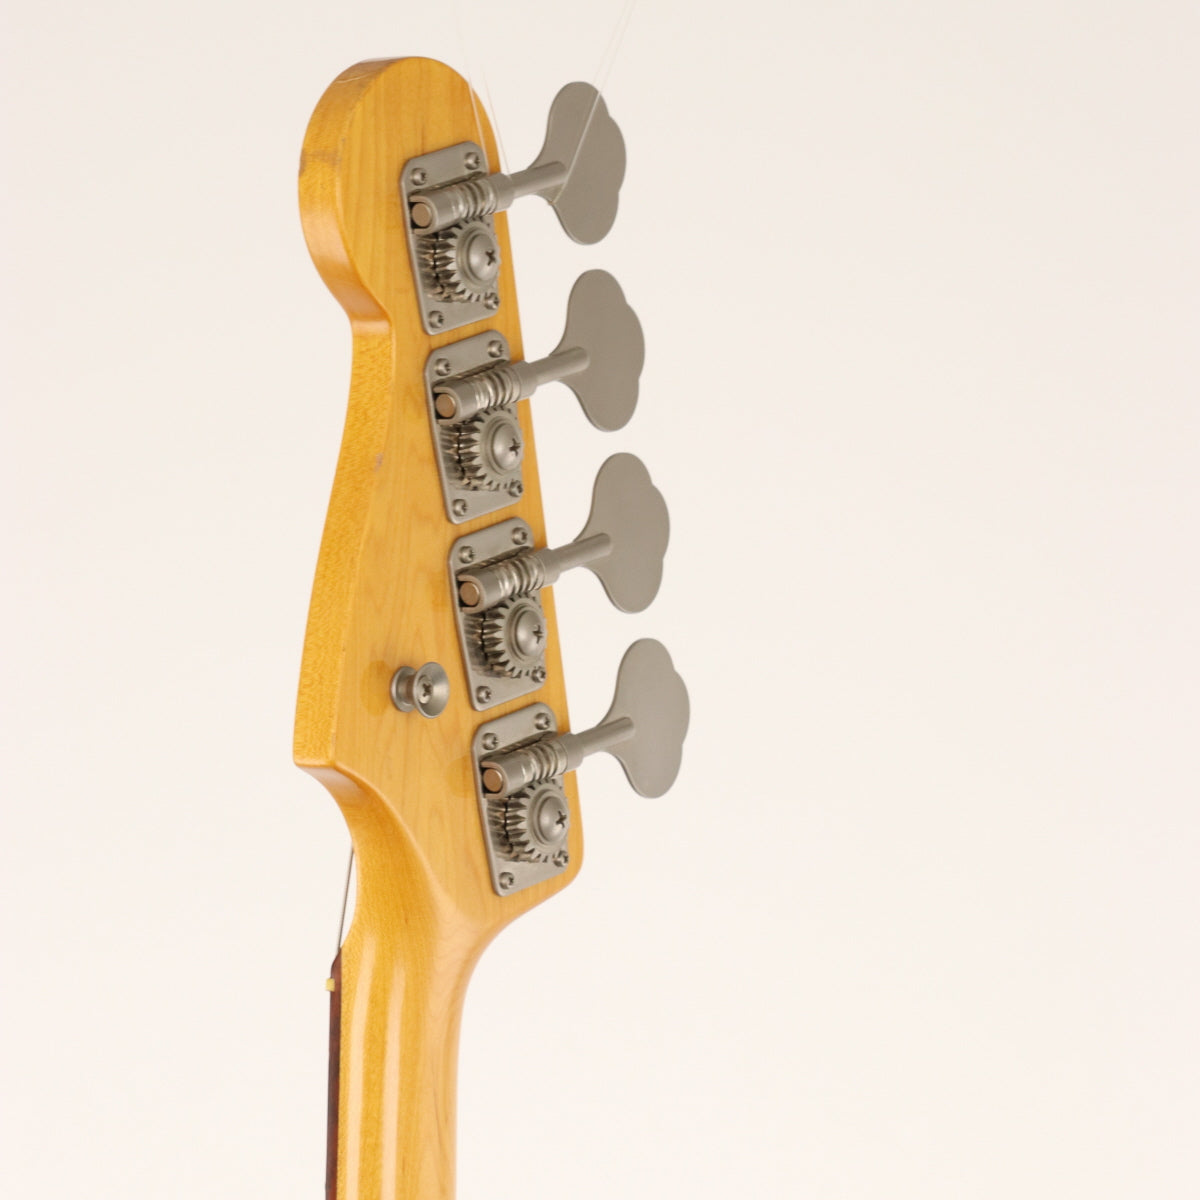 [SN CIJ  S020741] USED Fender Japan / JB62 3-Tone Sunburst [11]